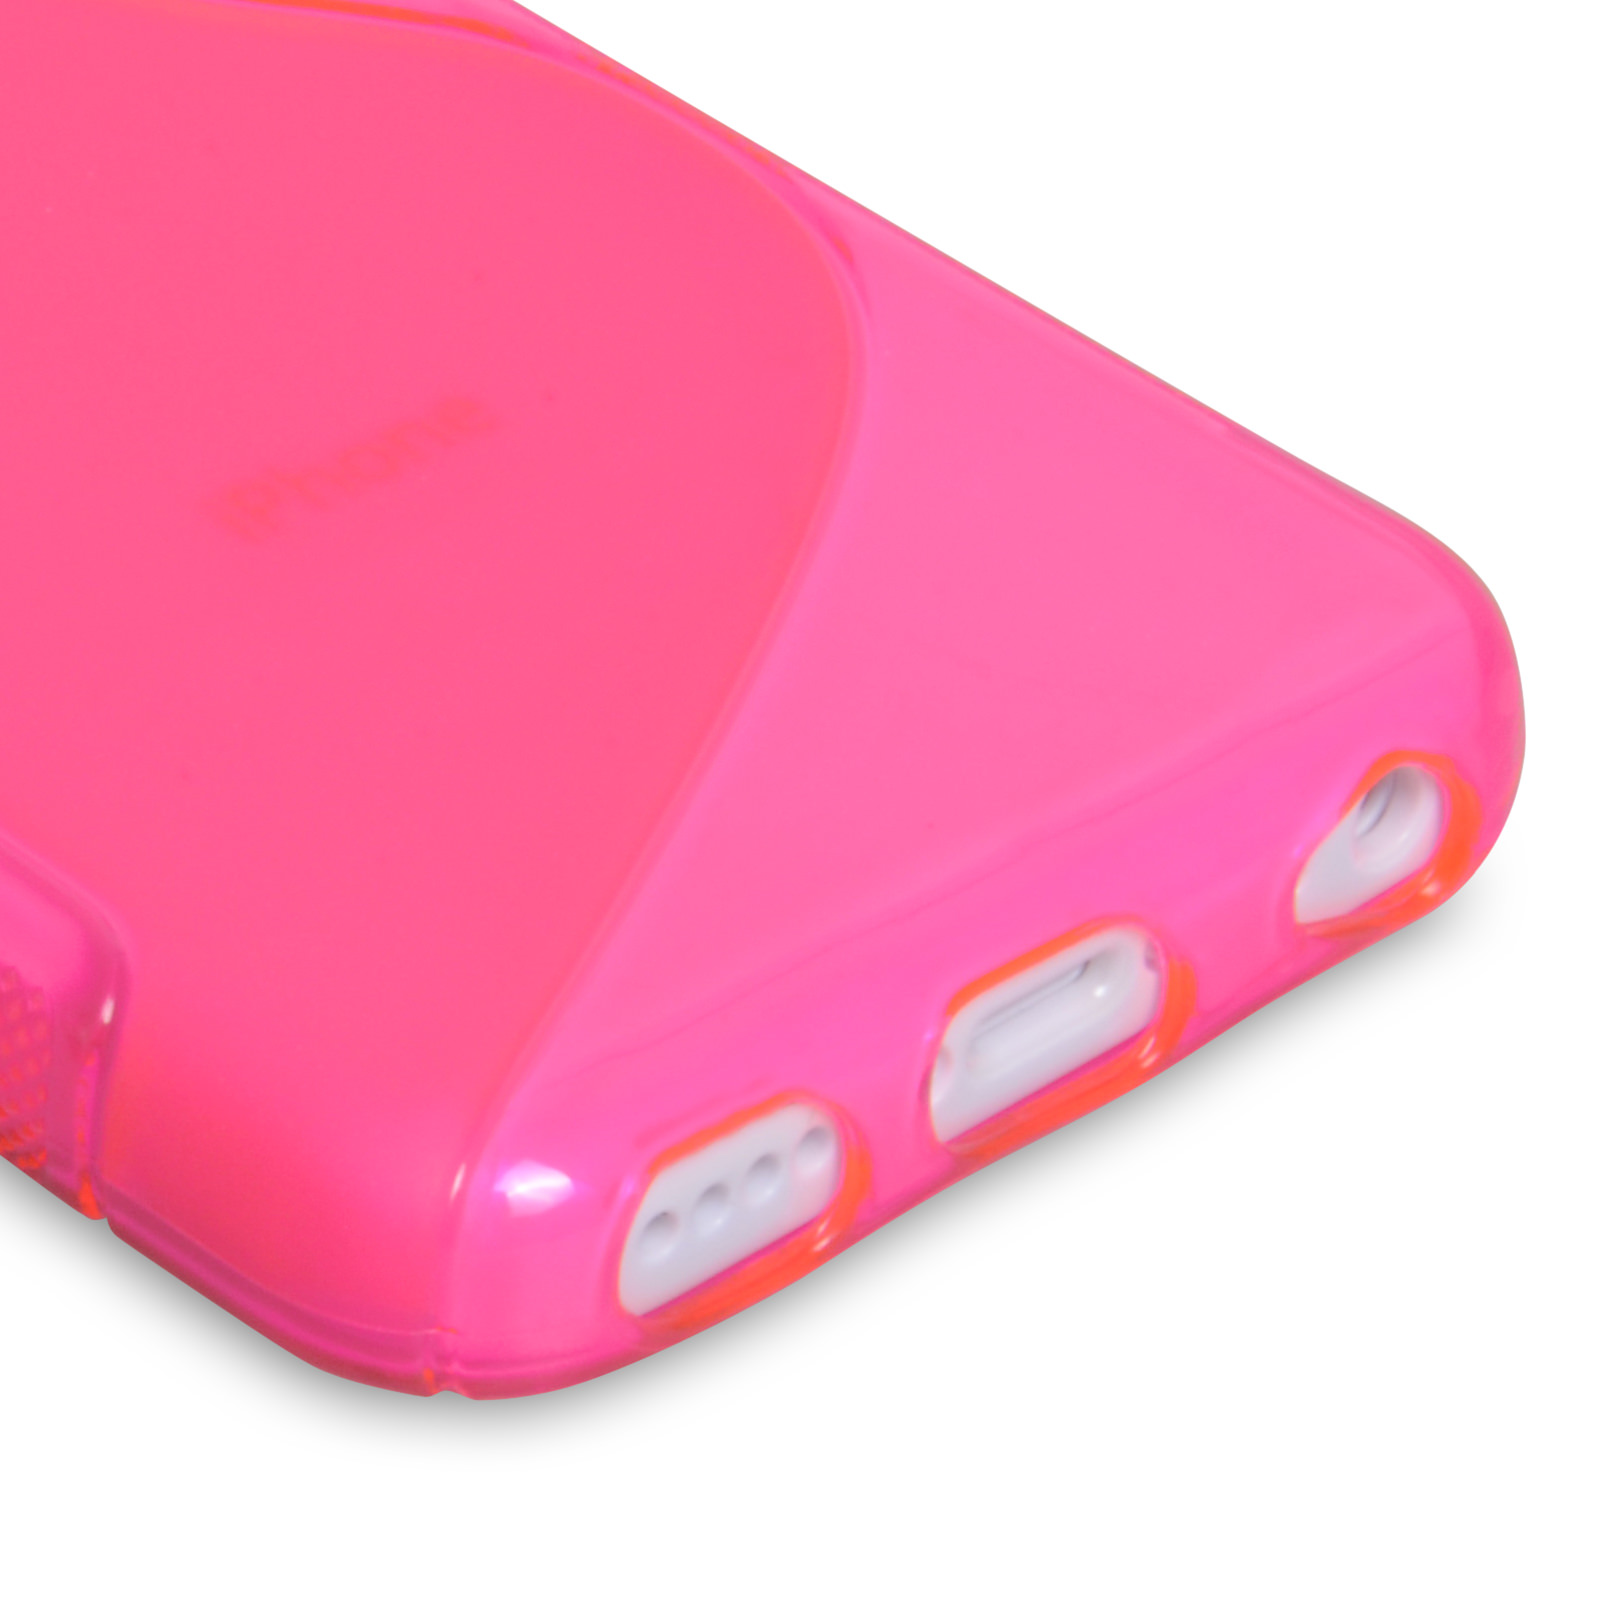 Caseflex iPhone 5c Silicone Gel S-Line Case - Hot Pink